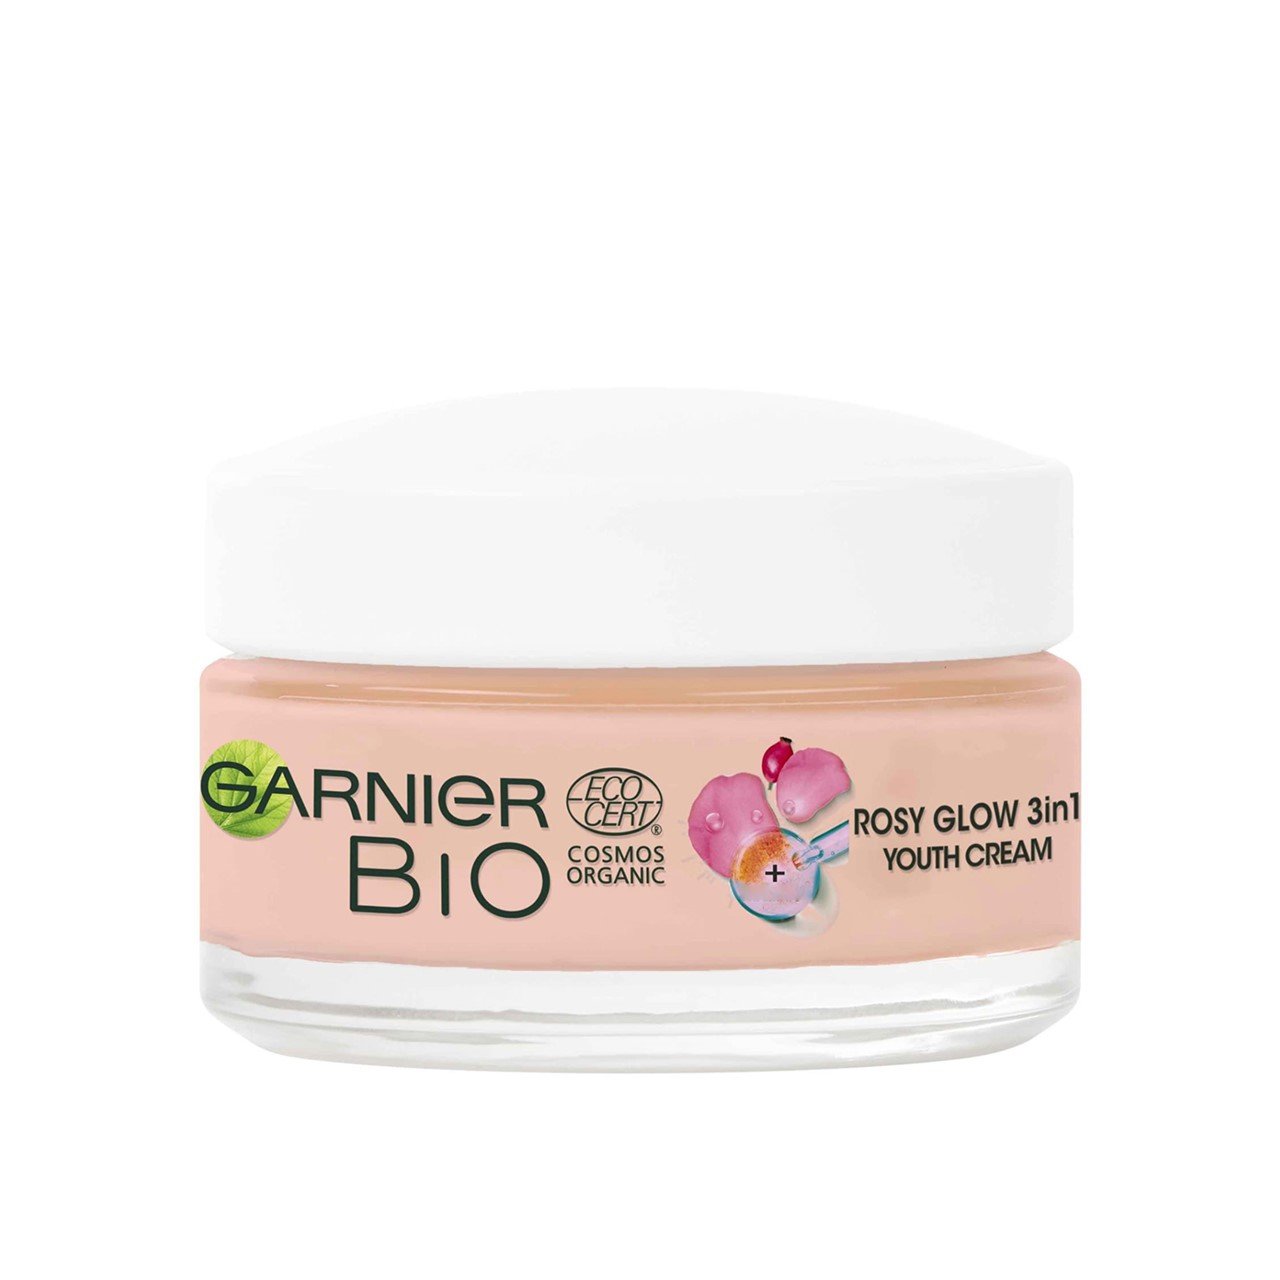 Garnier Bio Organic Rosy Glow 3in1 Youth Cream 50ml (1.69fl oz)